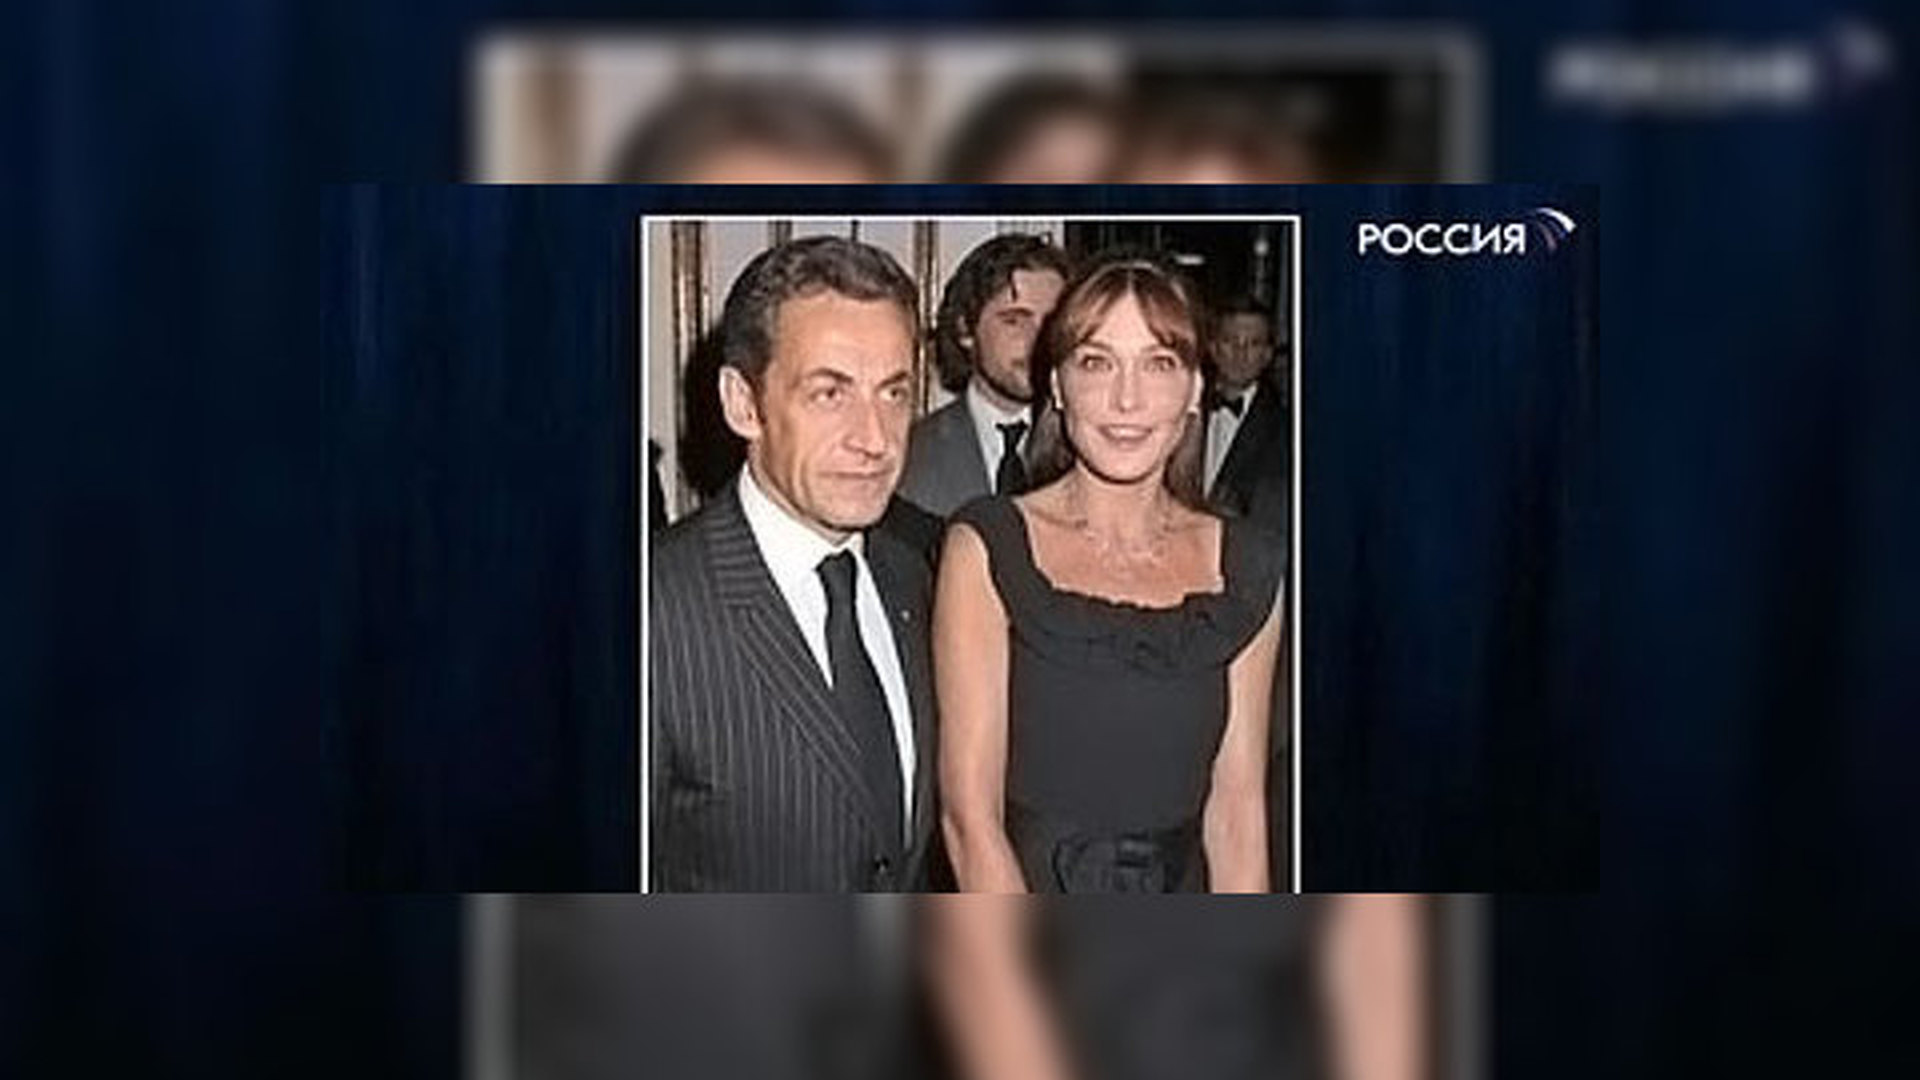 Жена макрона фото и панин сходство сравнение. Николя Саркози с женой. Жена Саркози и Панин.